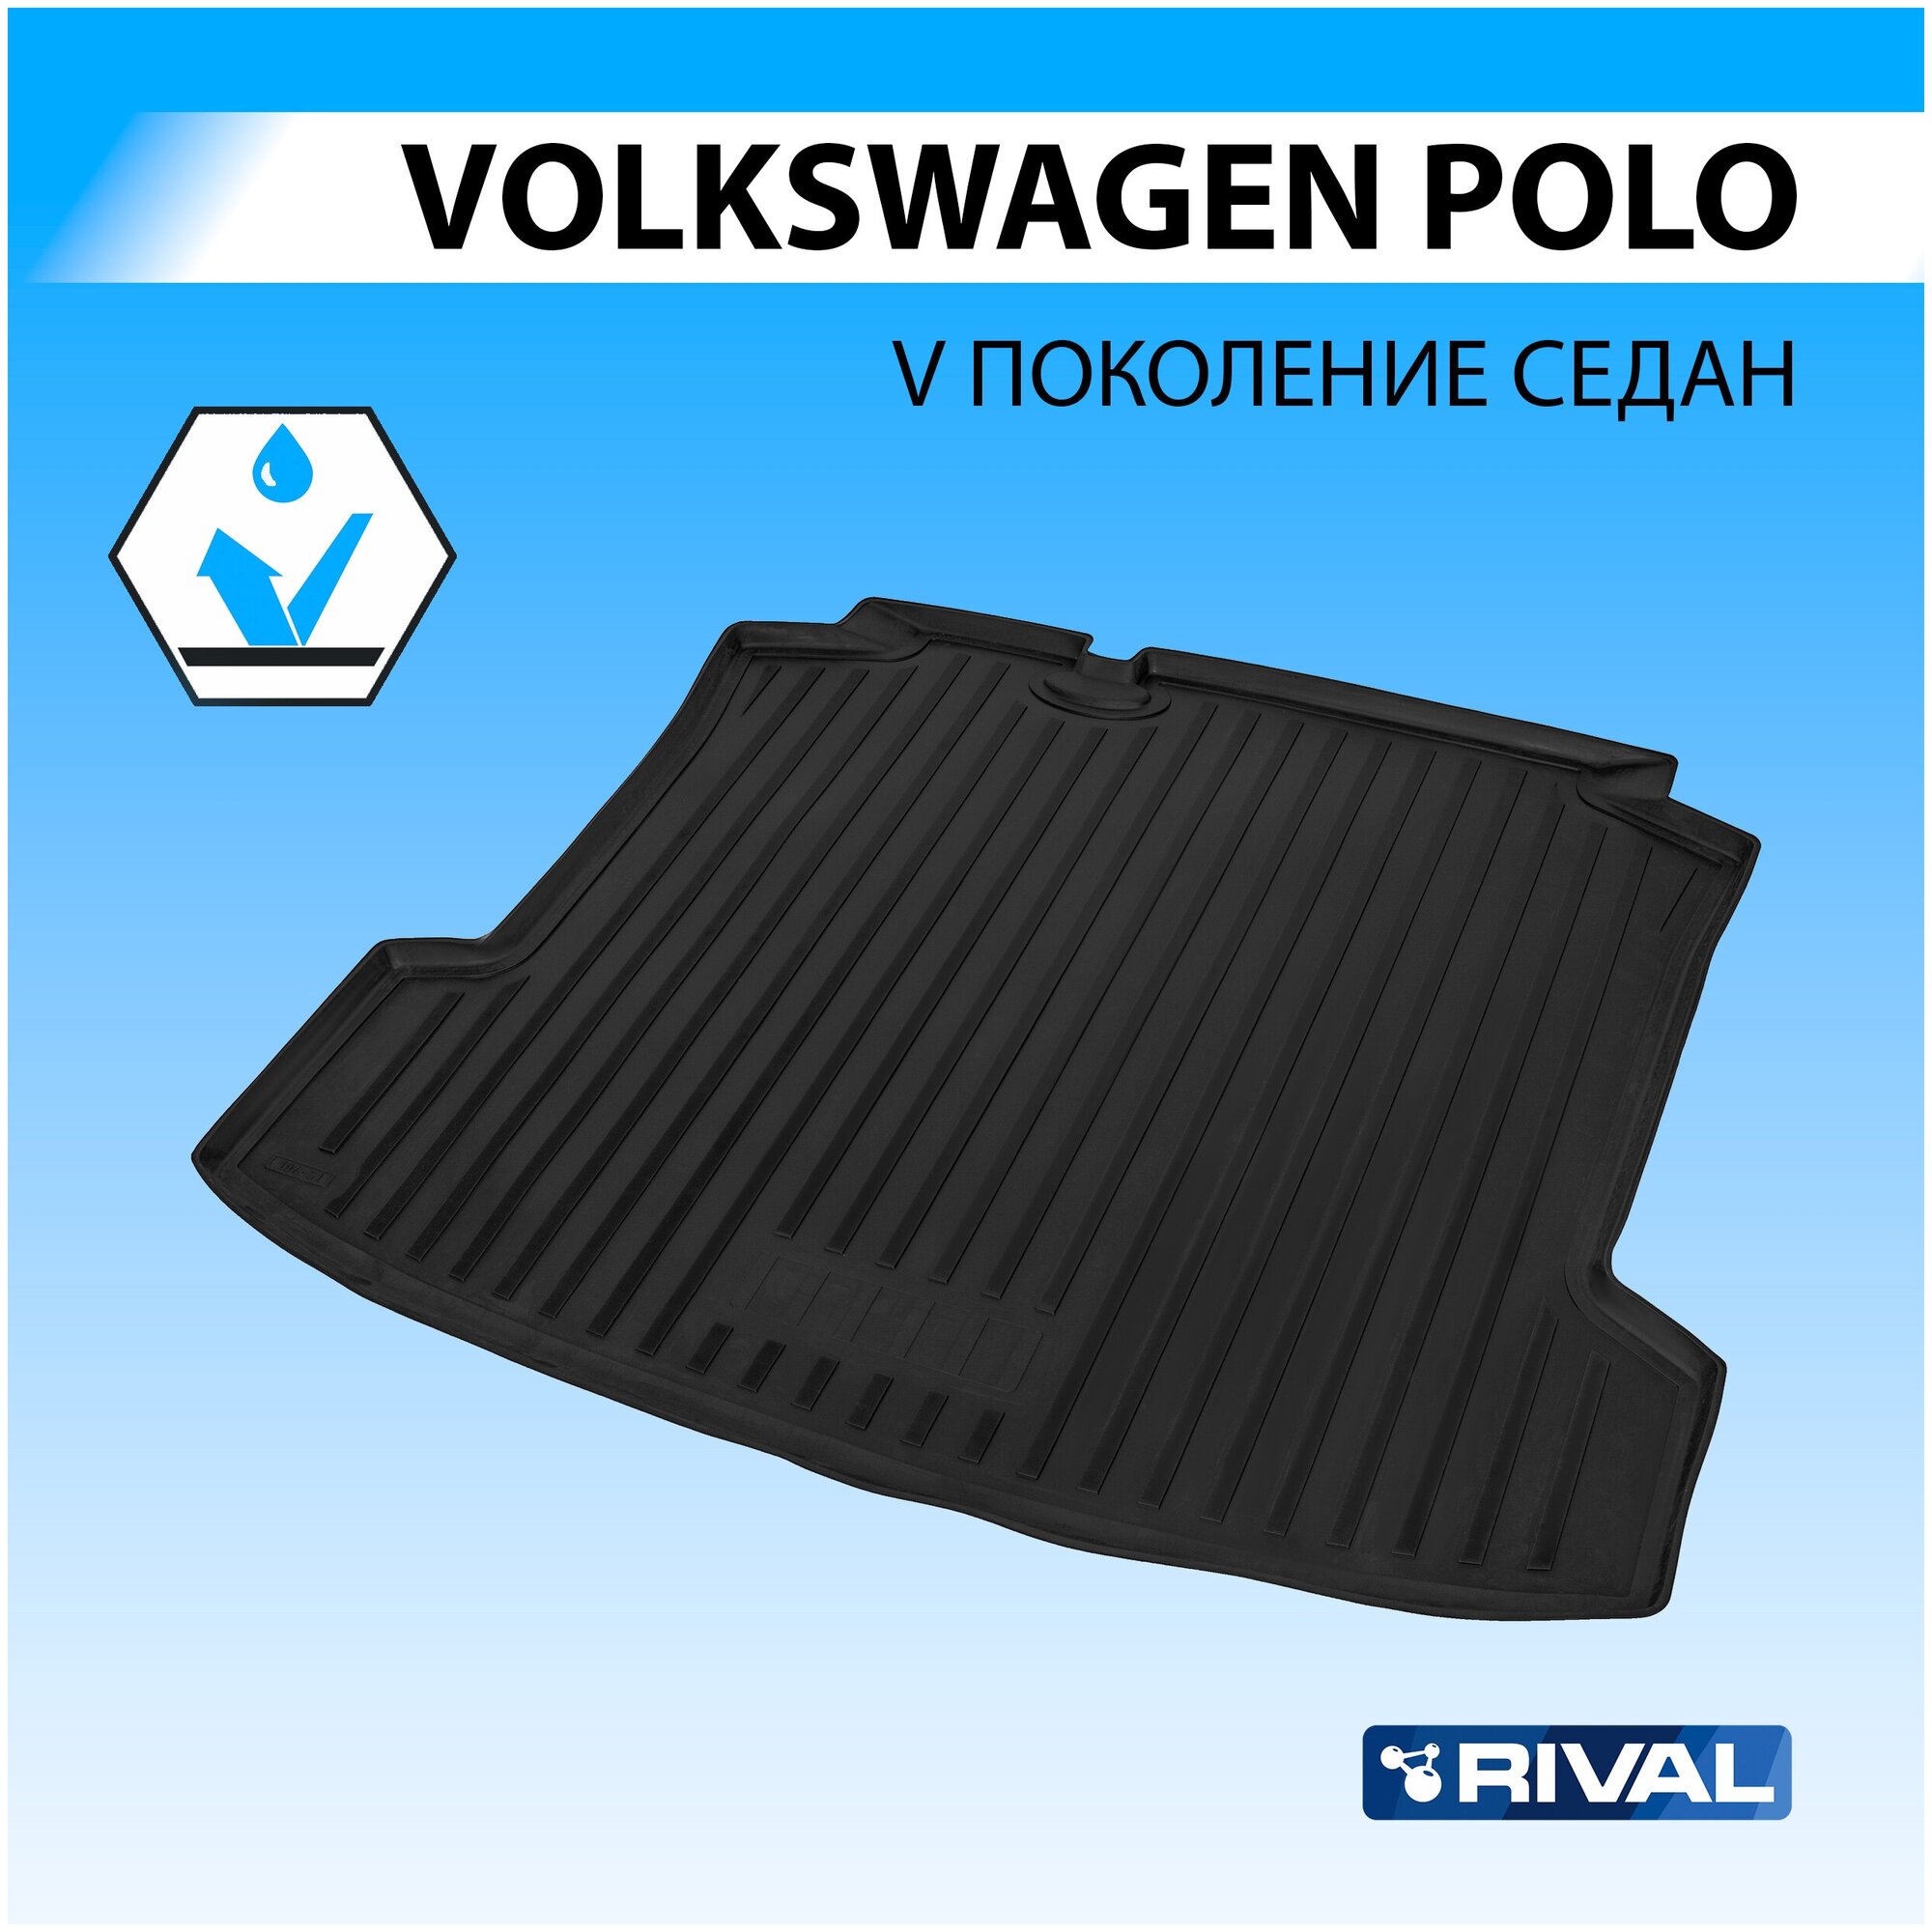 Коврик Багажника Volkswagen Polo Черный Полиуретан Rival 15804002 Rival арт. 15804002